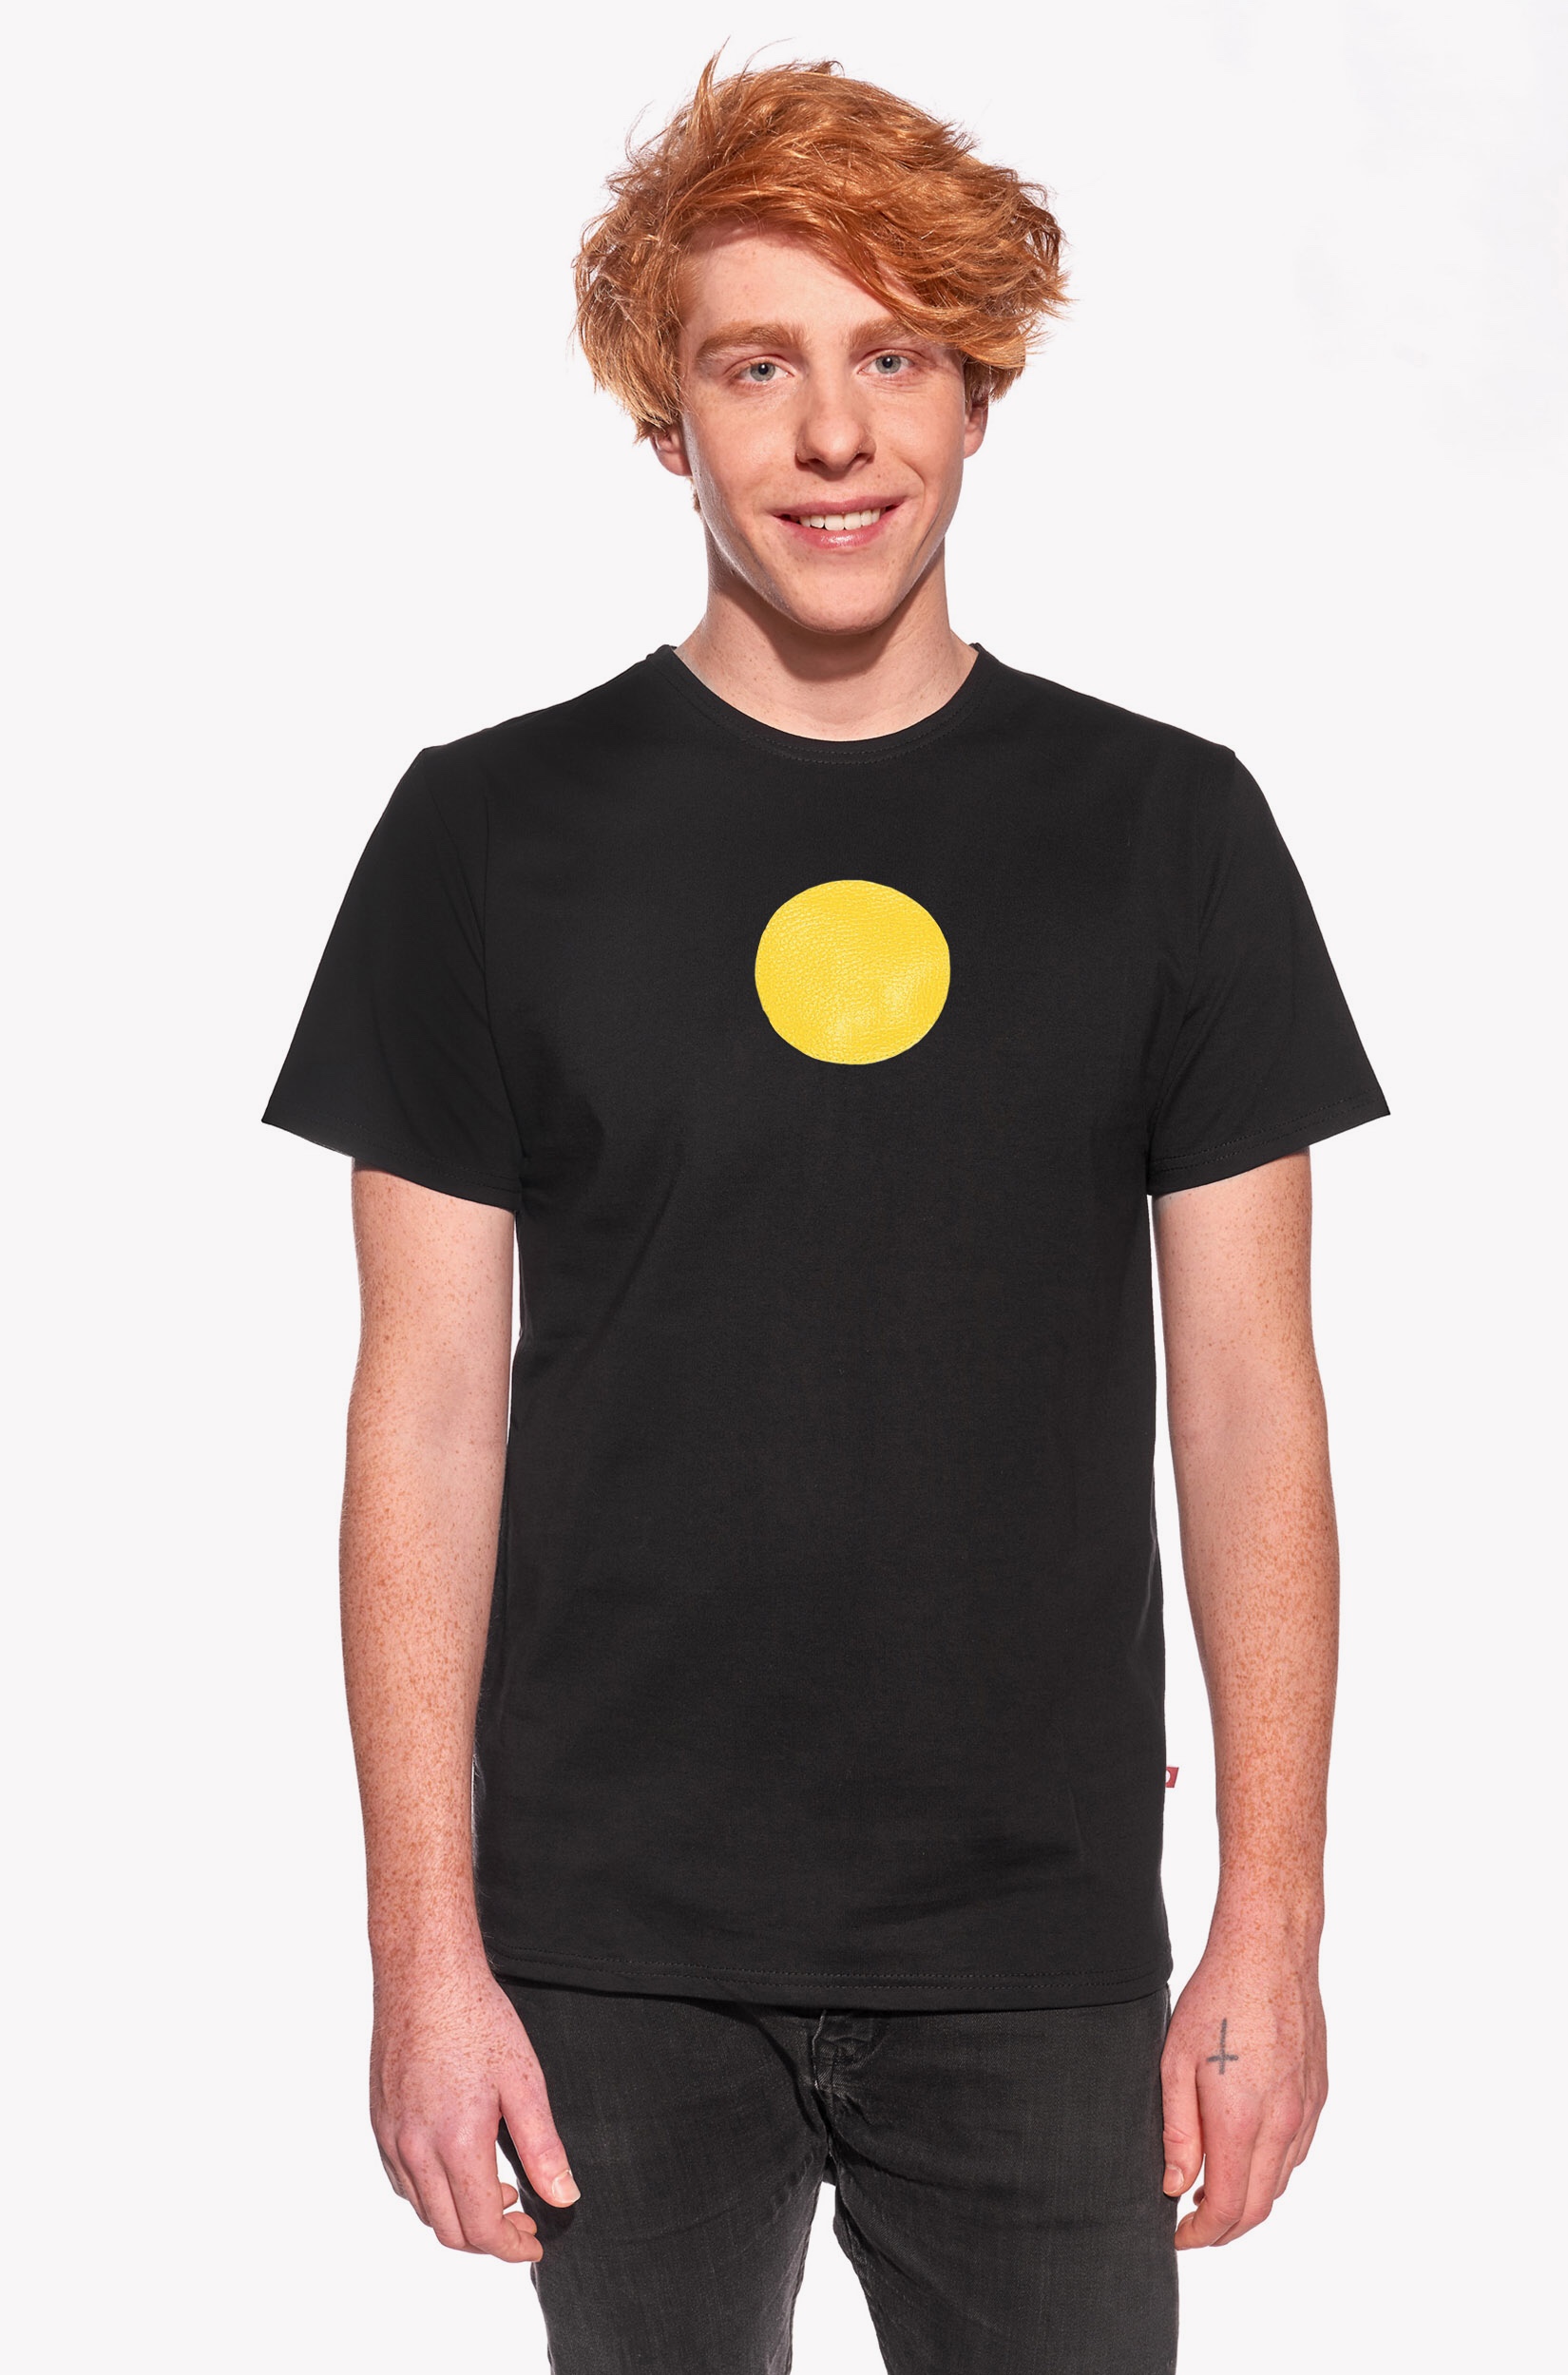 Shirt with circle